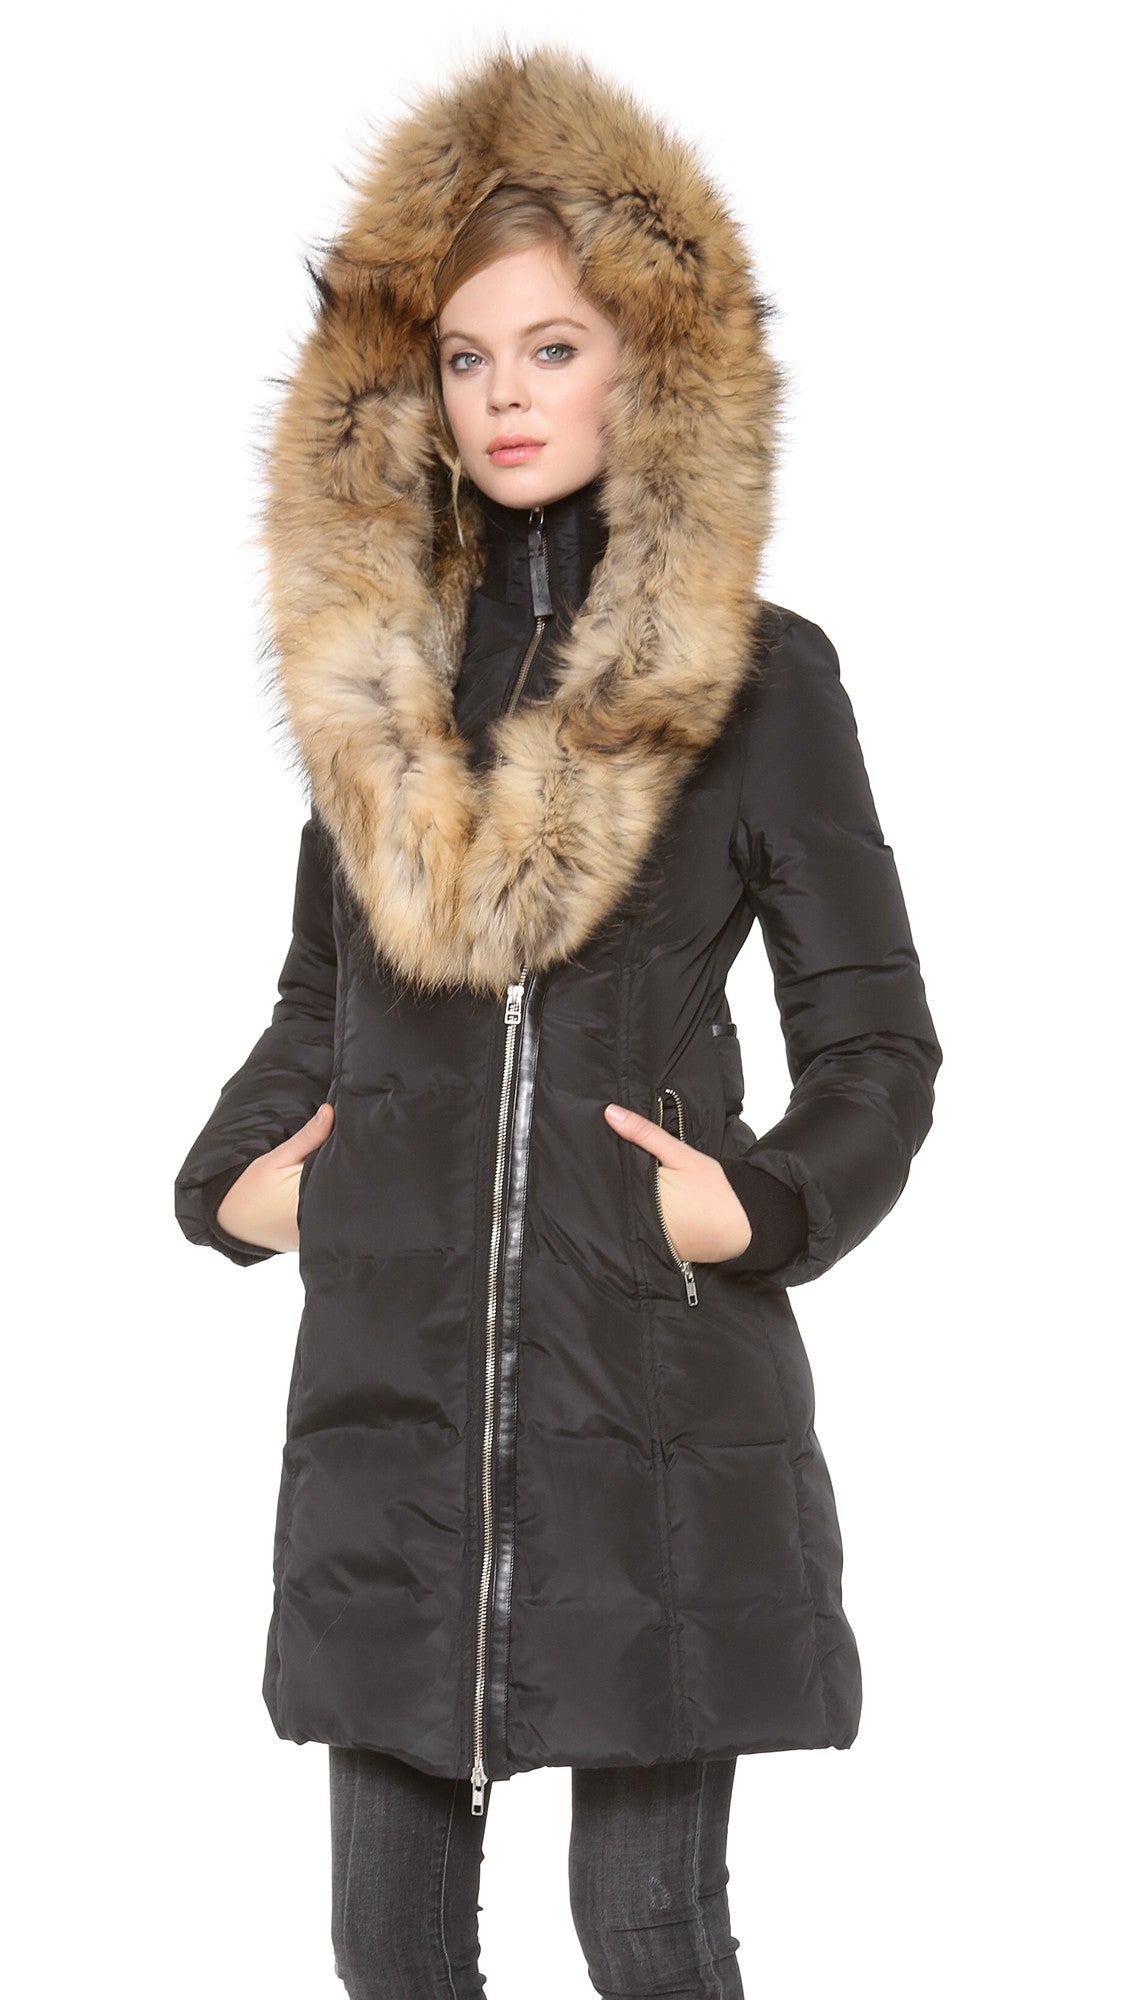 Trish Down Coat With Fur Hood - Dejavu NYC